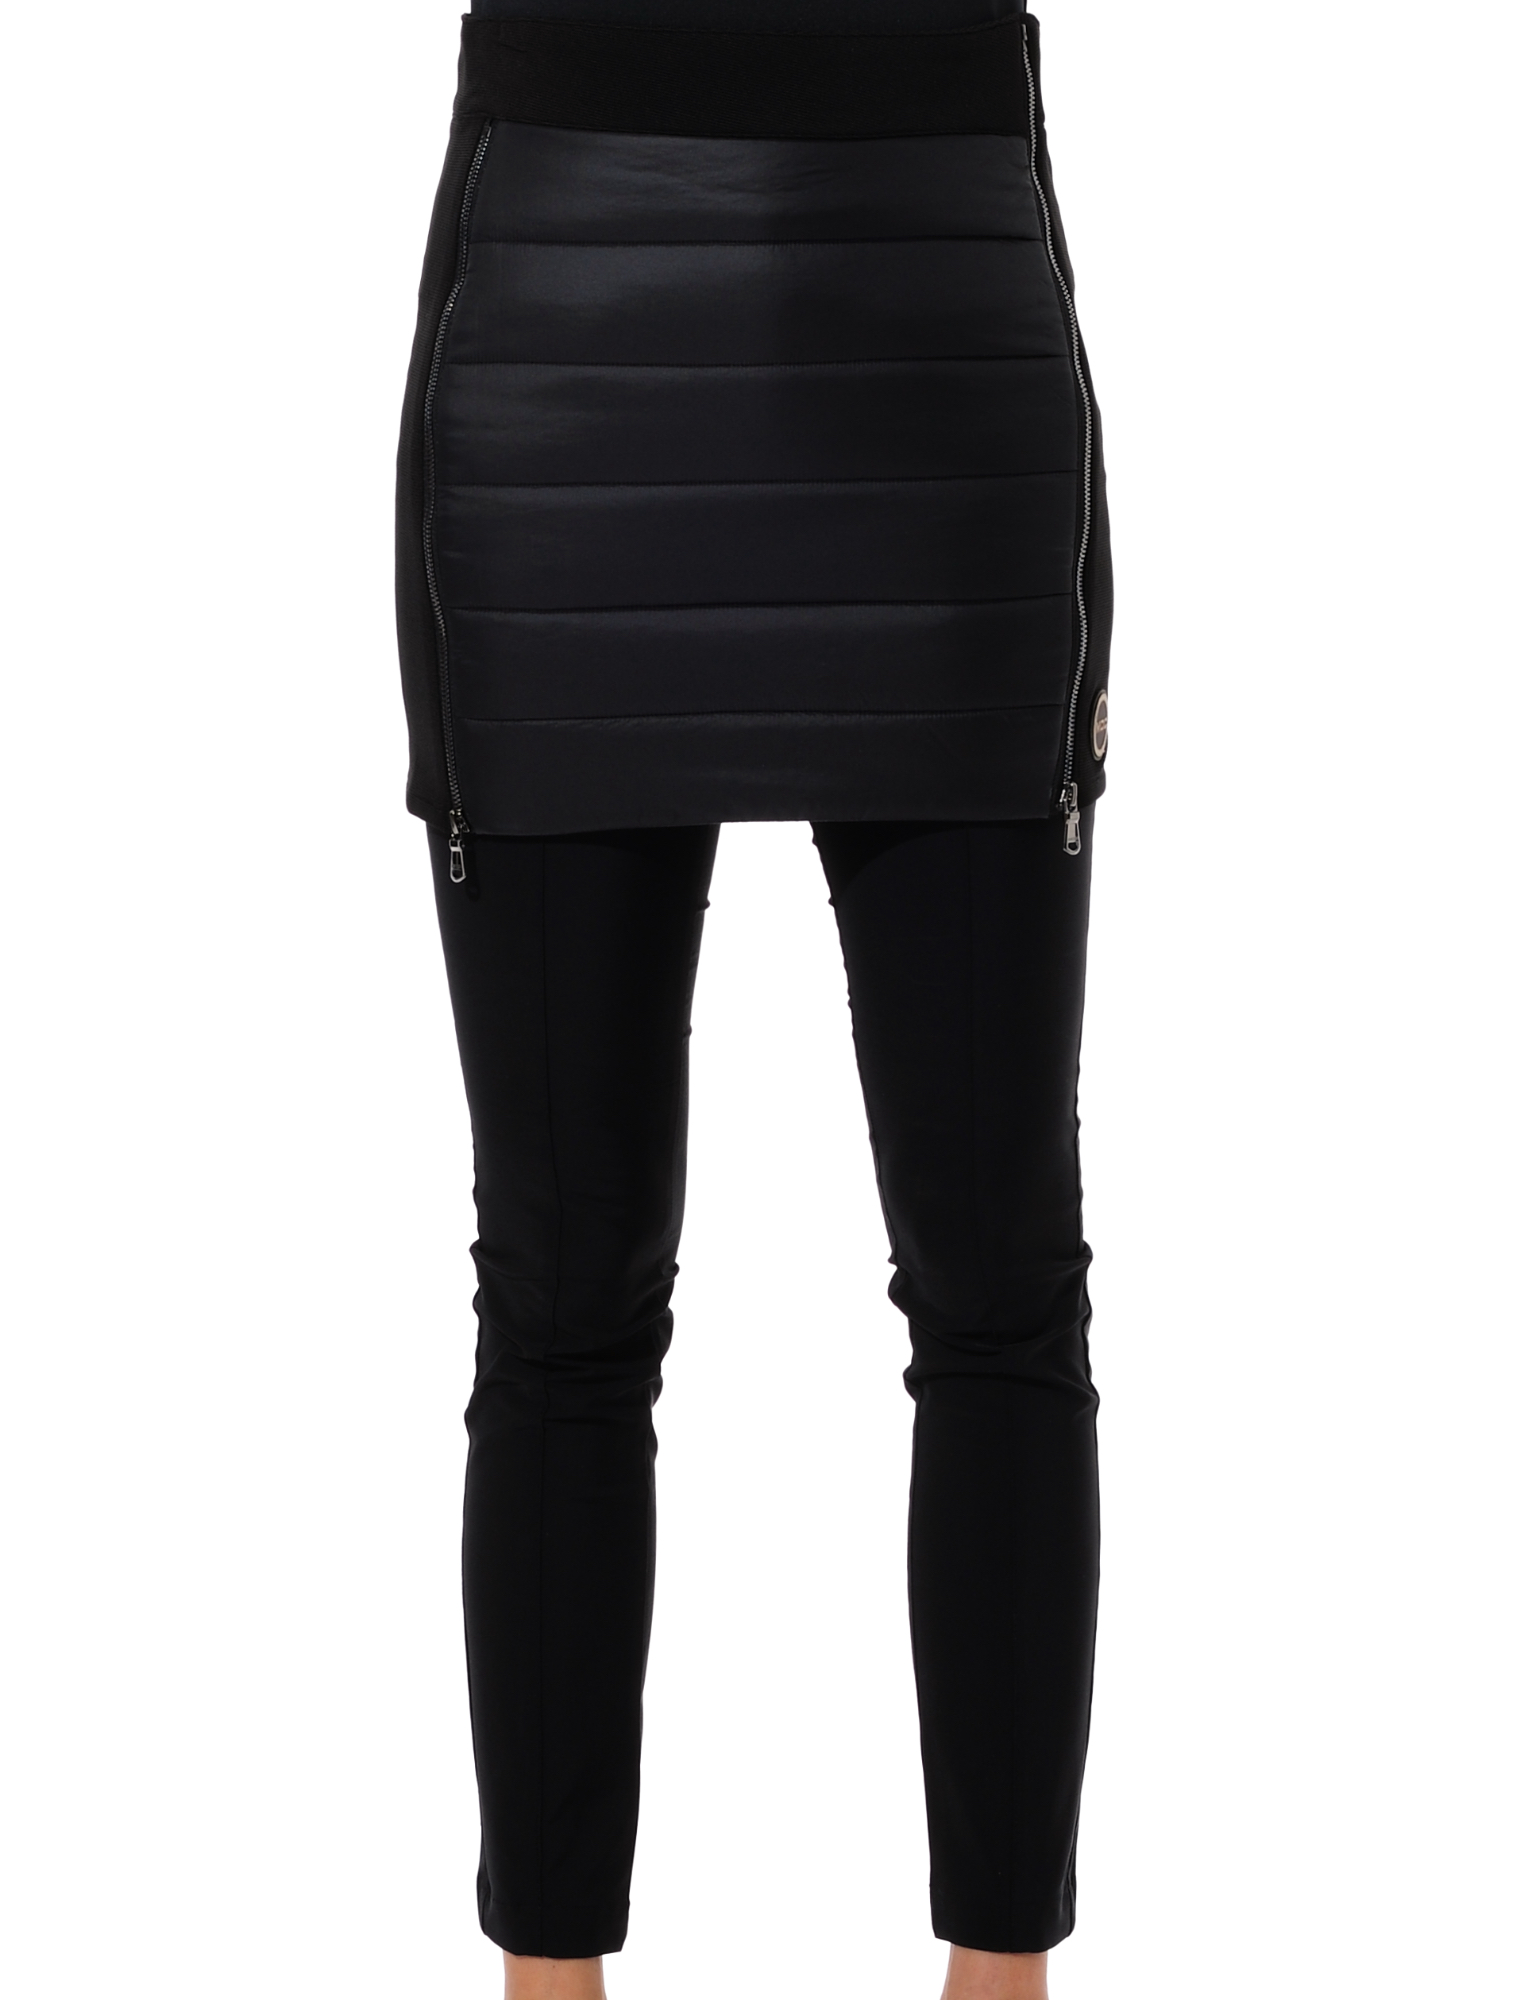 Stelvio skirt black 